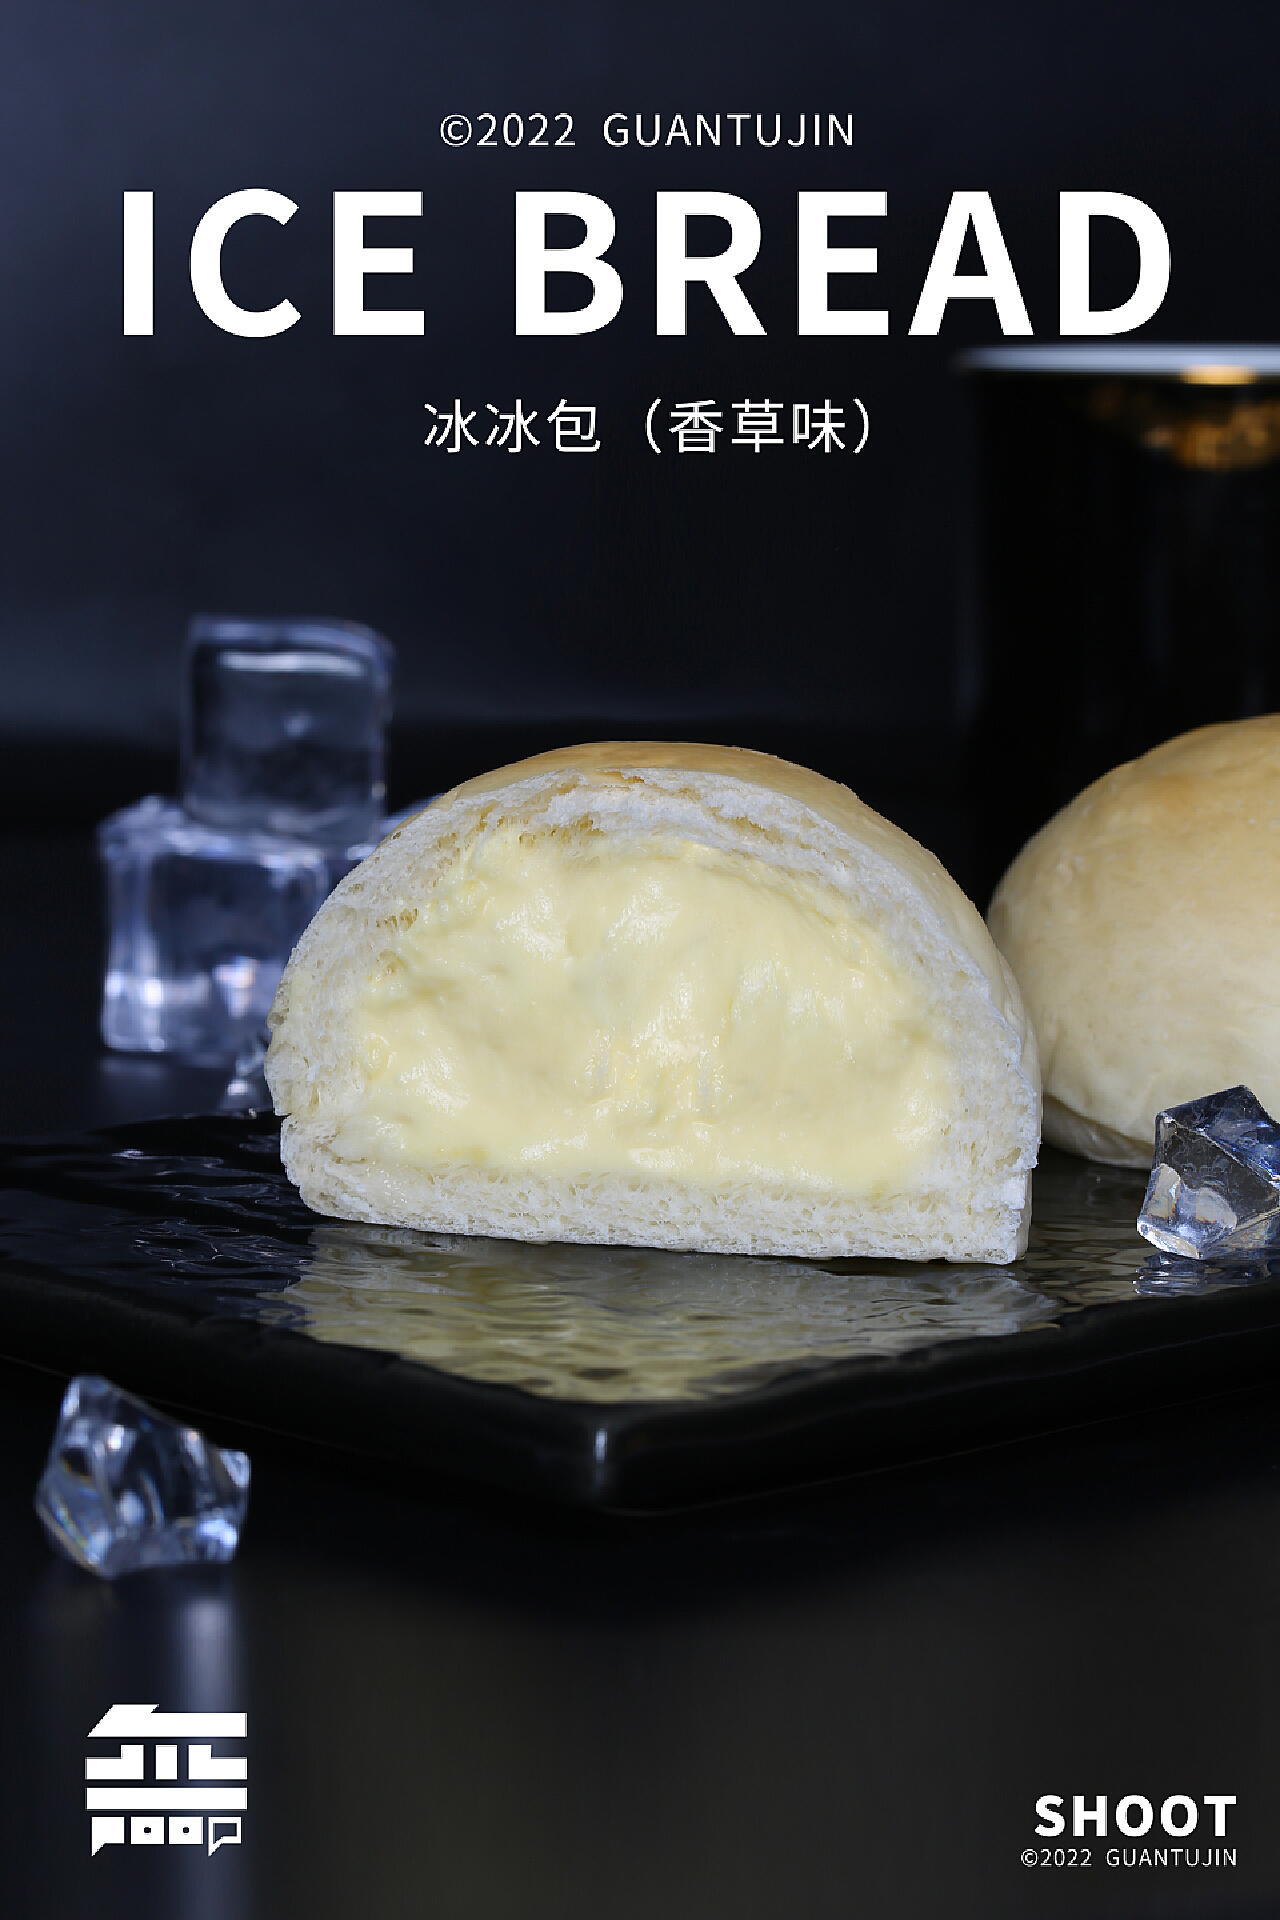 河南恒美食品推出夏日新品——冰面包，给你不一样的面包口感 ！ - 哔哩哔哩